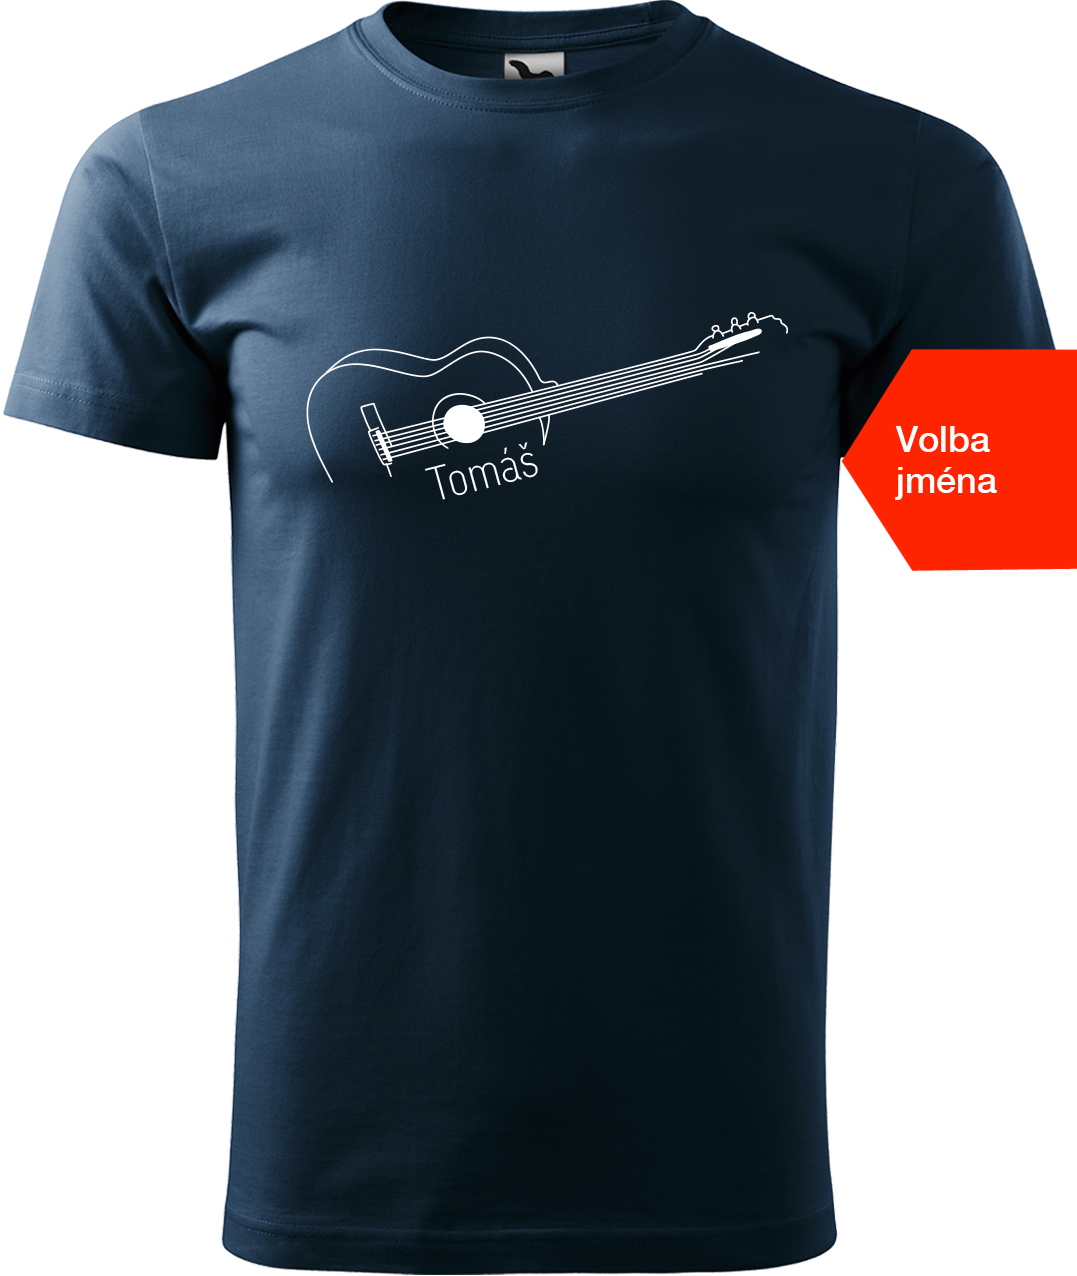 Pánské tričko s kytarou se jménem - Stylizovaná kytara Velikost: 4XL, Barva: Námořní modrá (02), Střih: pánský